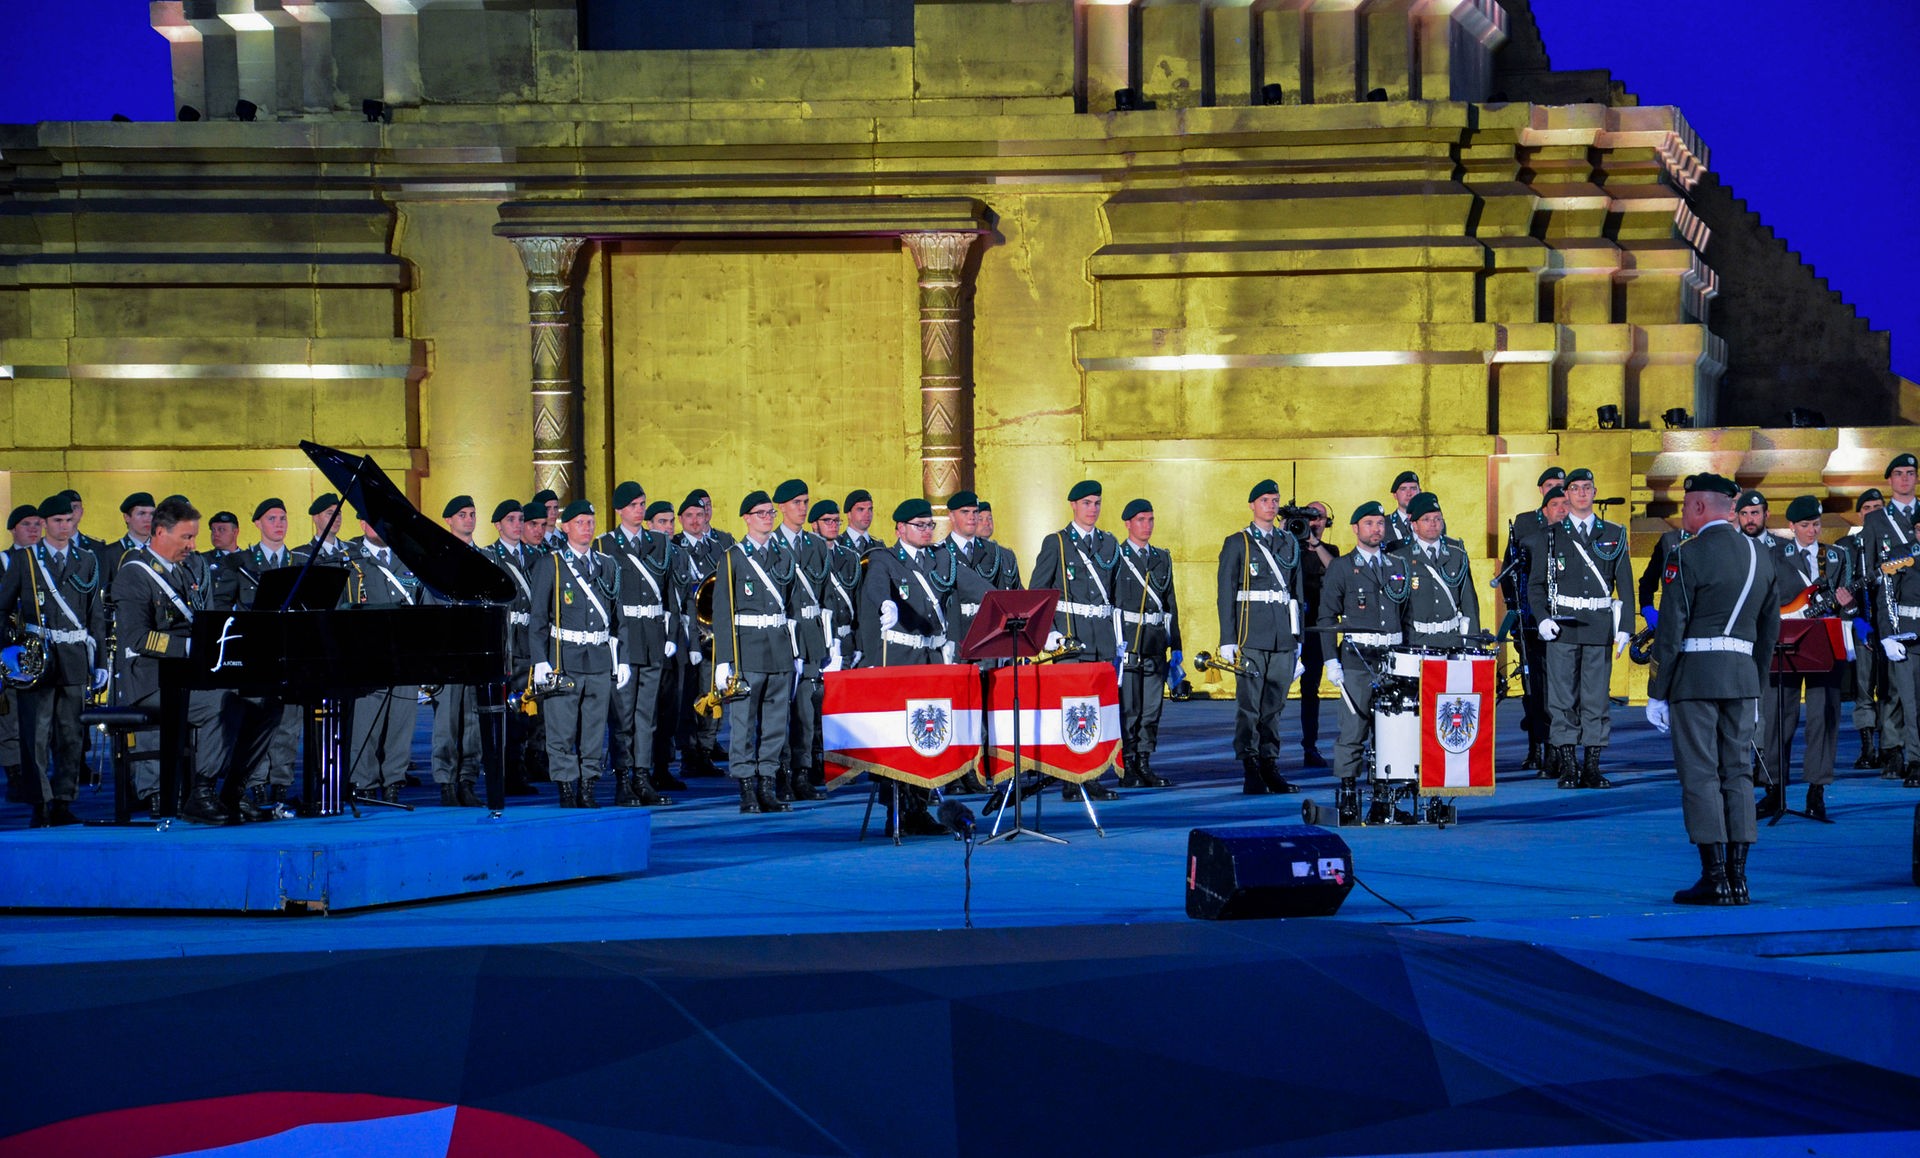 Mehrere Reihen an Musiker*innen in ihrer Gardeuniform stehen auf der Bühne. Im Vordergrund große Trommeln, die mit dem Wappen Österreichs verhängt sind. Links im Bild steht ein schwarzer Klavierflügel.